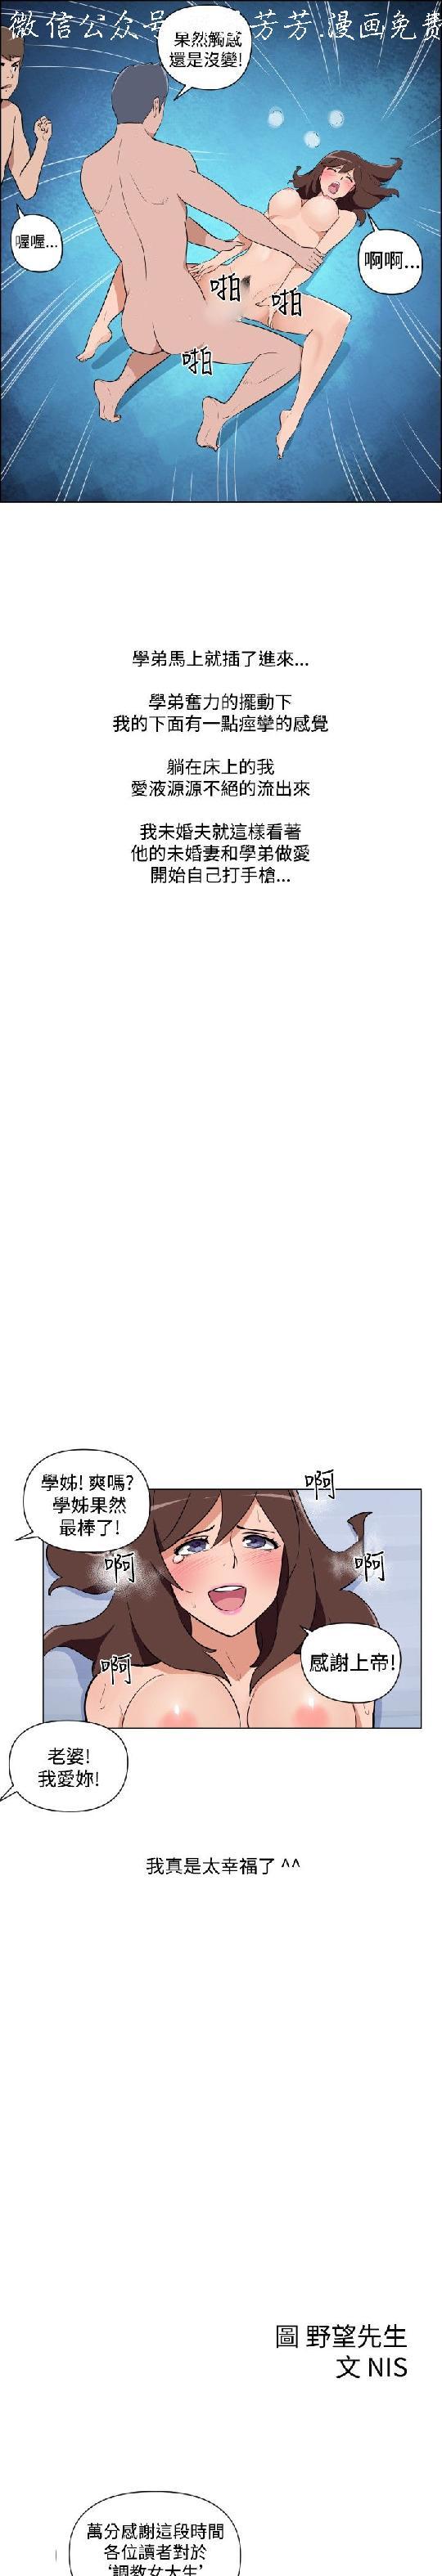 Suruba 調教女大生【中文】 Fun - Page 514